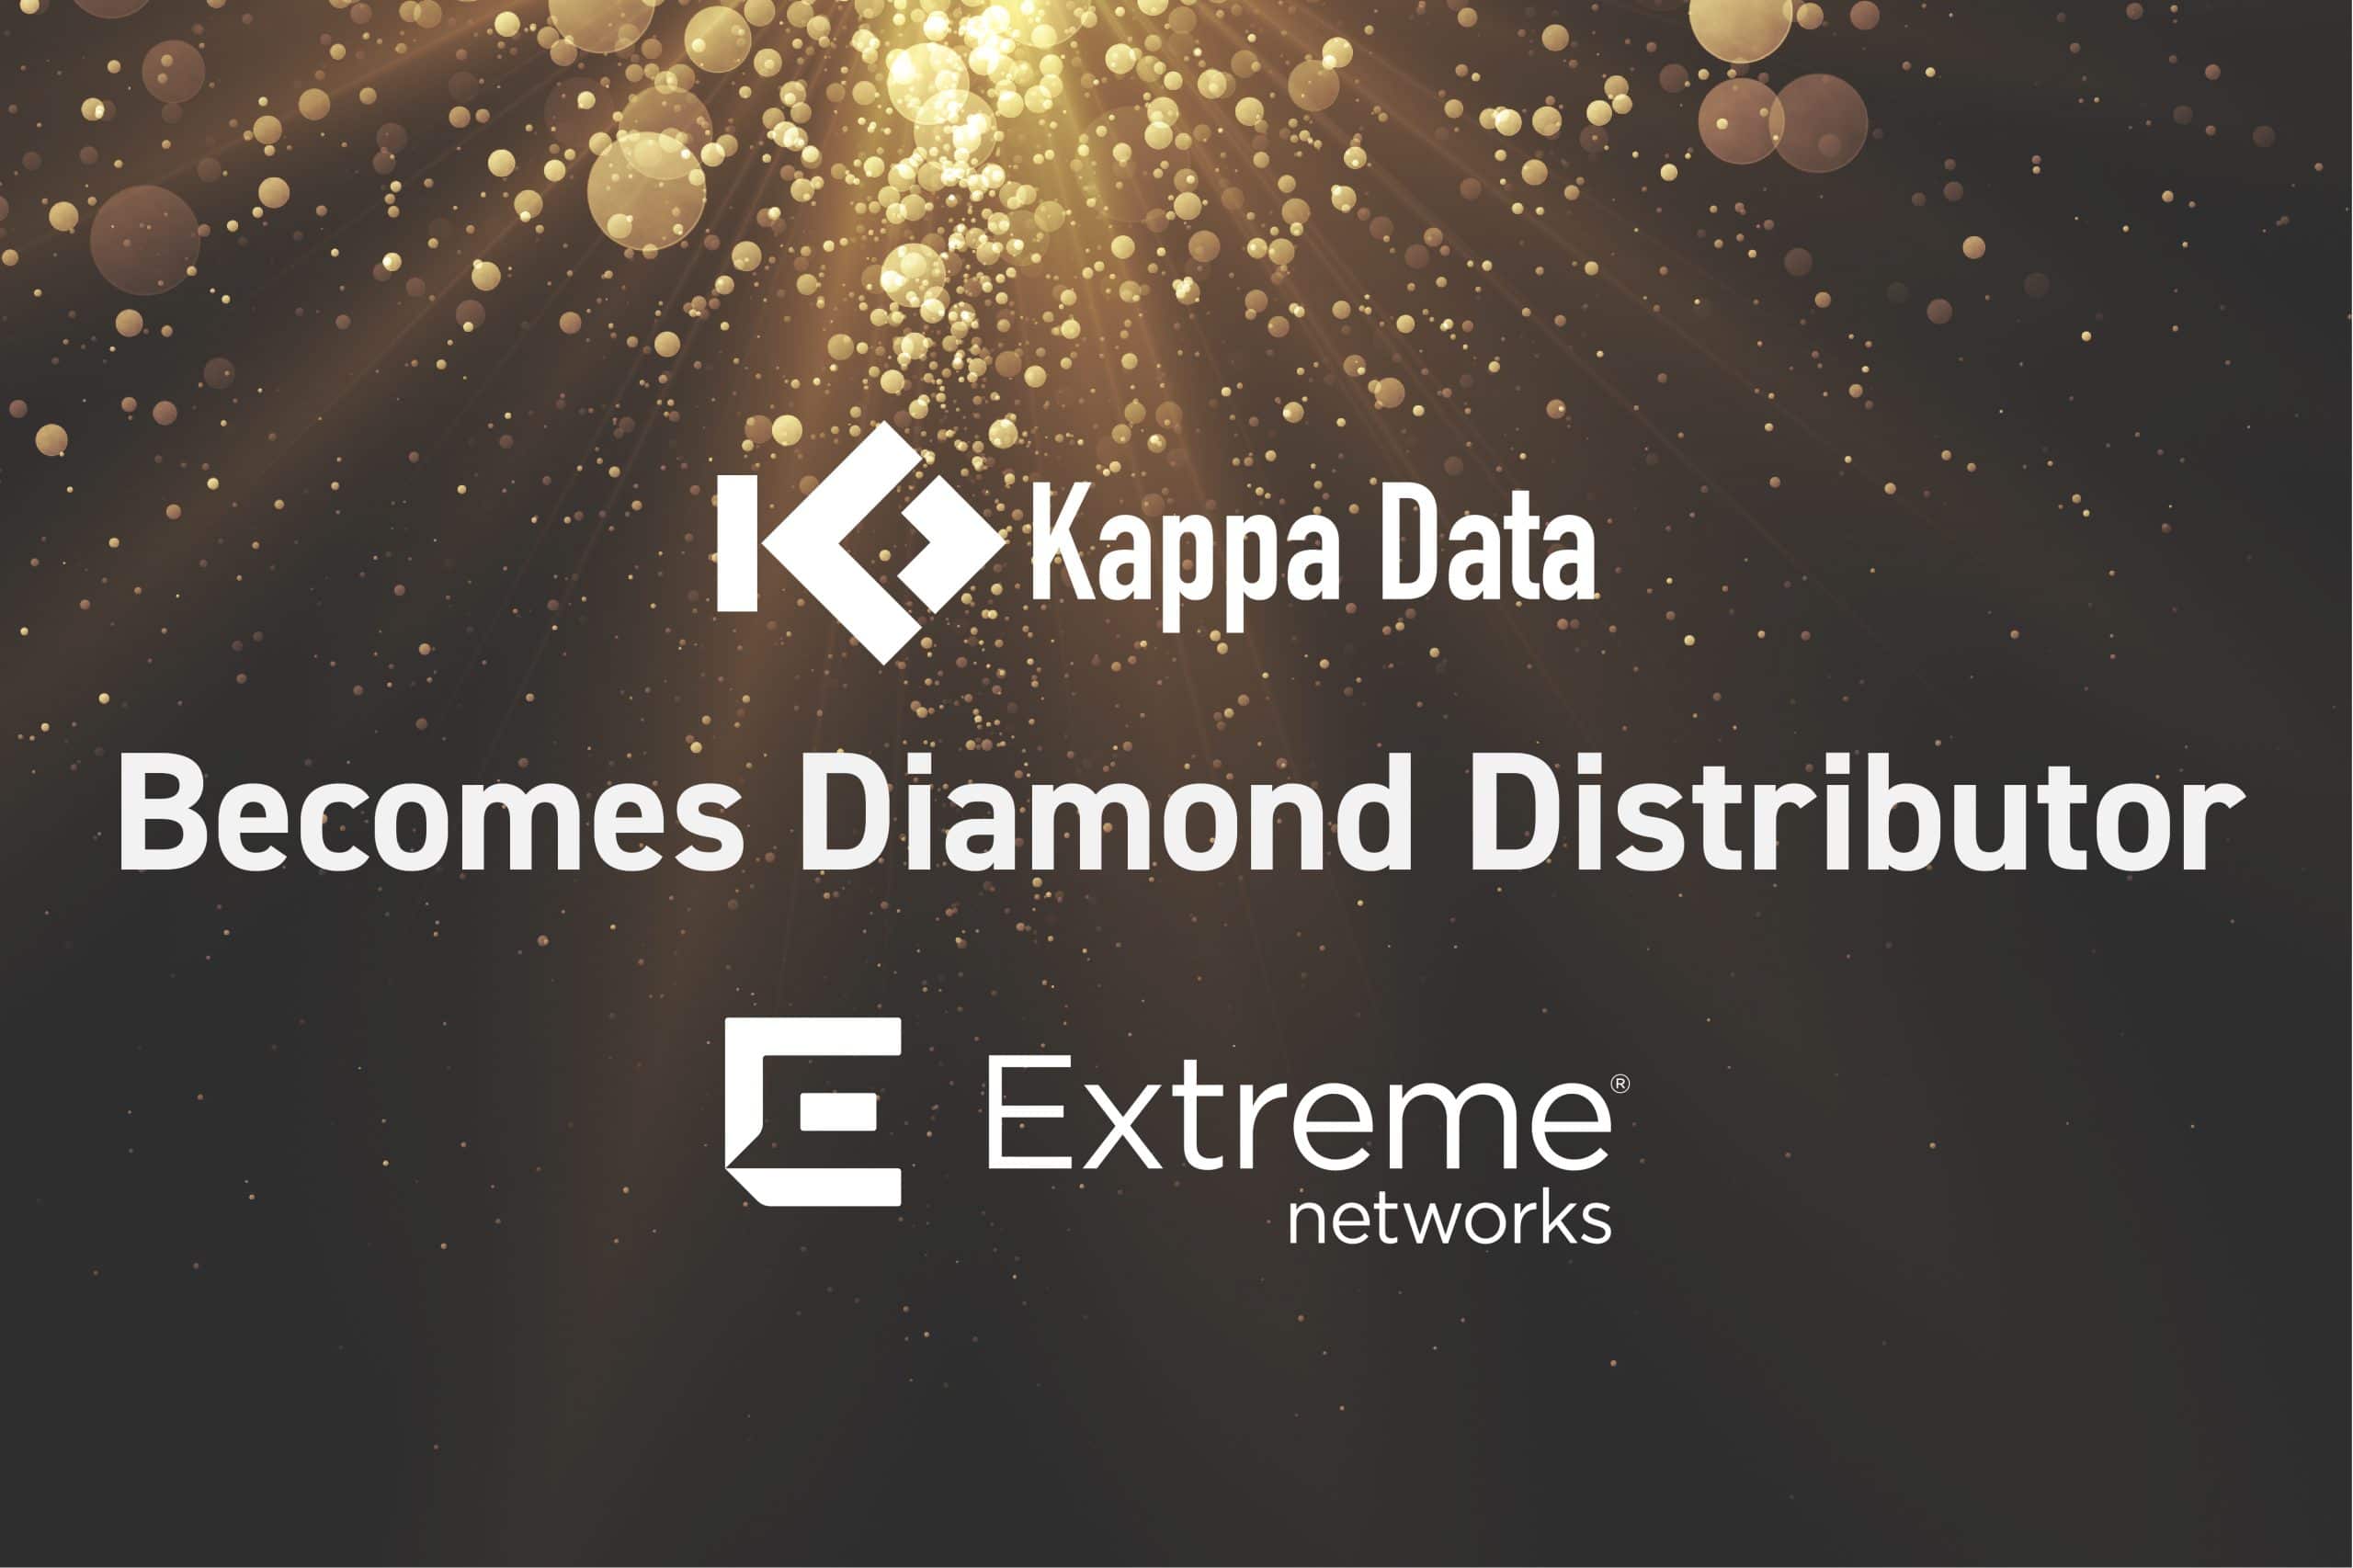 Kappa Data becomes diamond distributor extreme networks